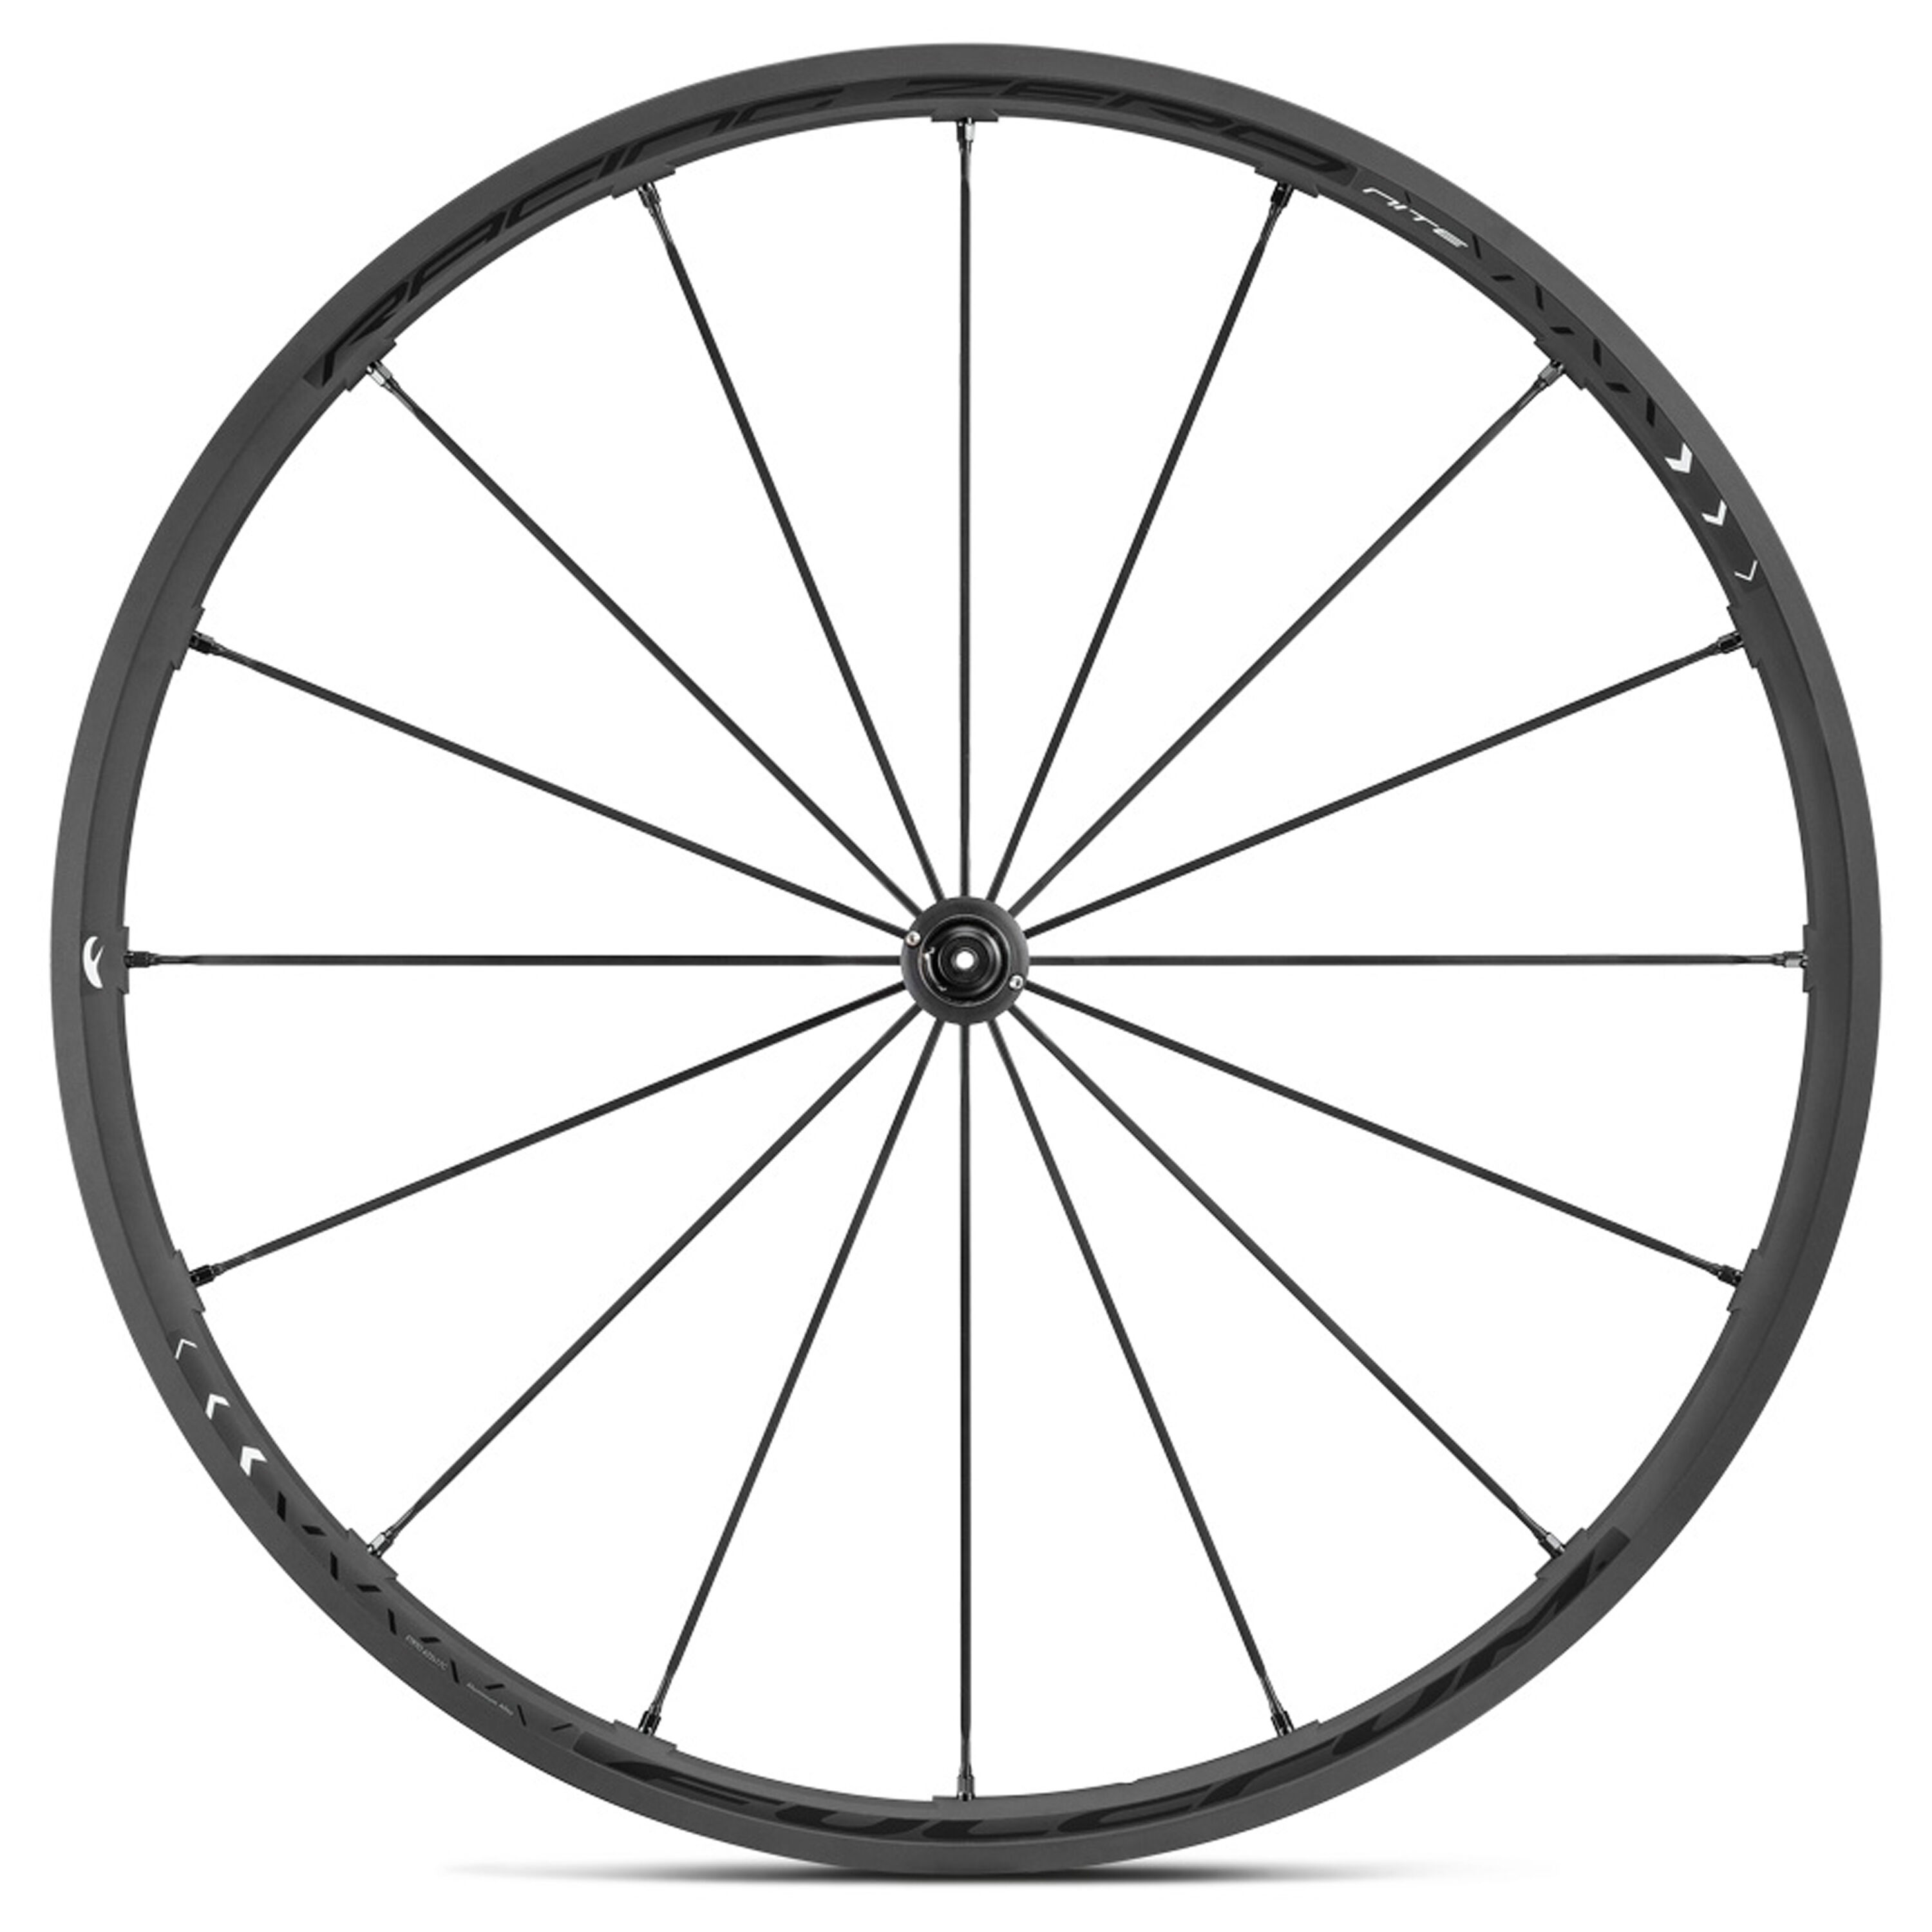 Как выглядит колесо велосипеда